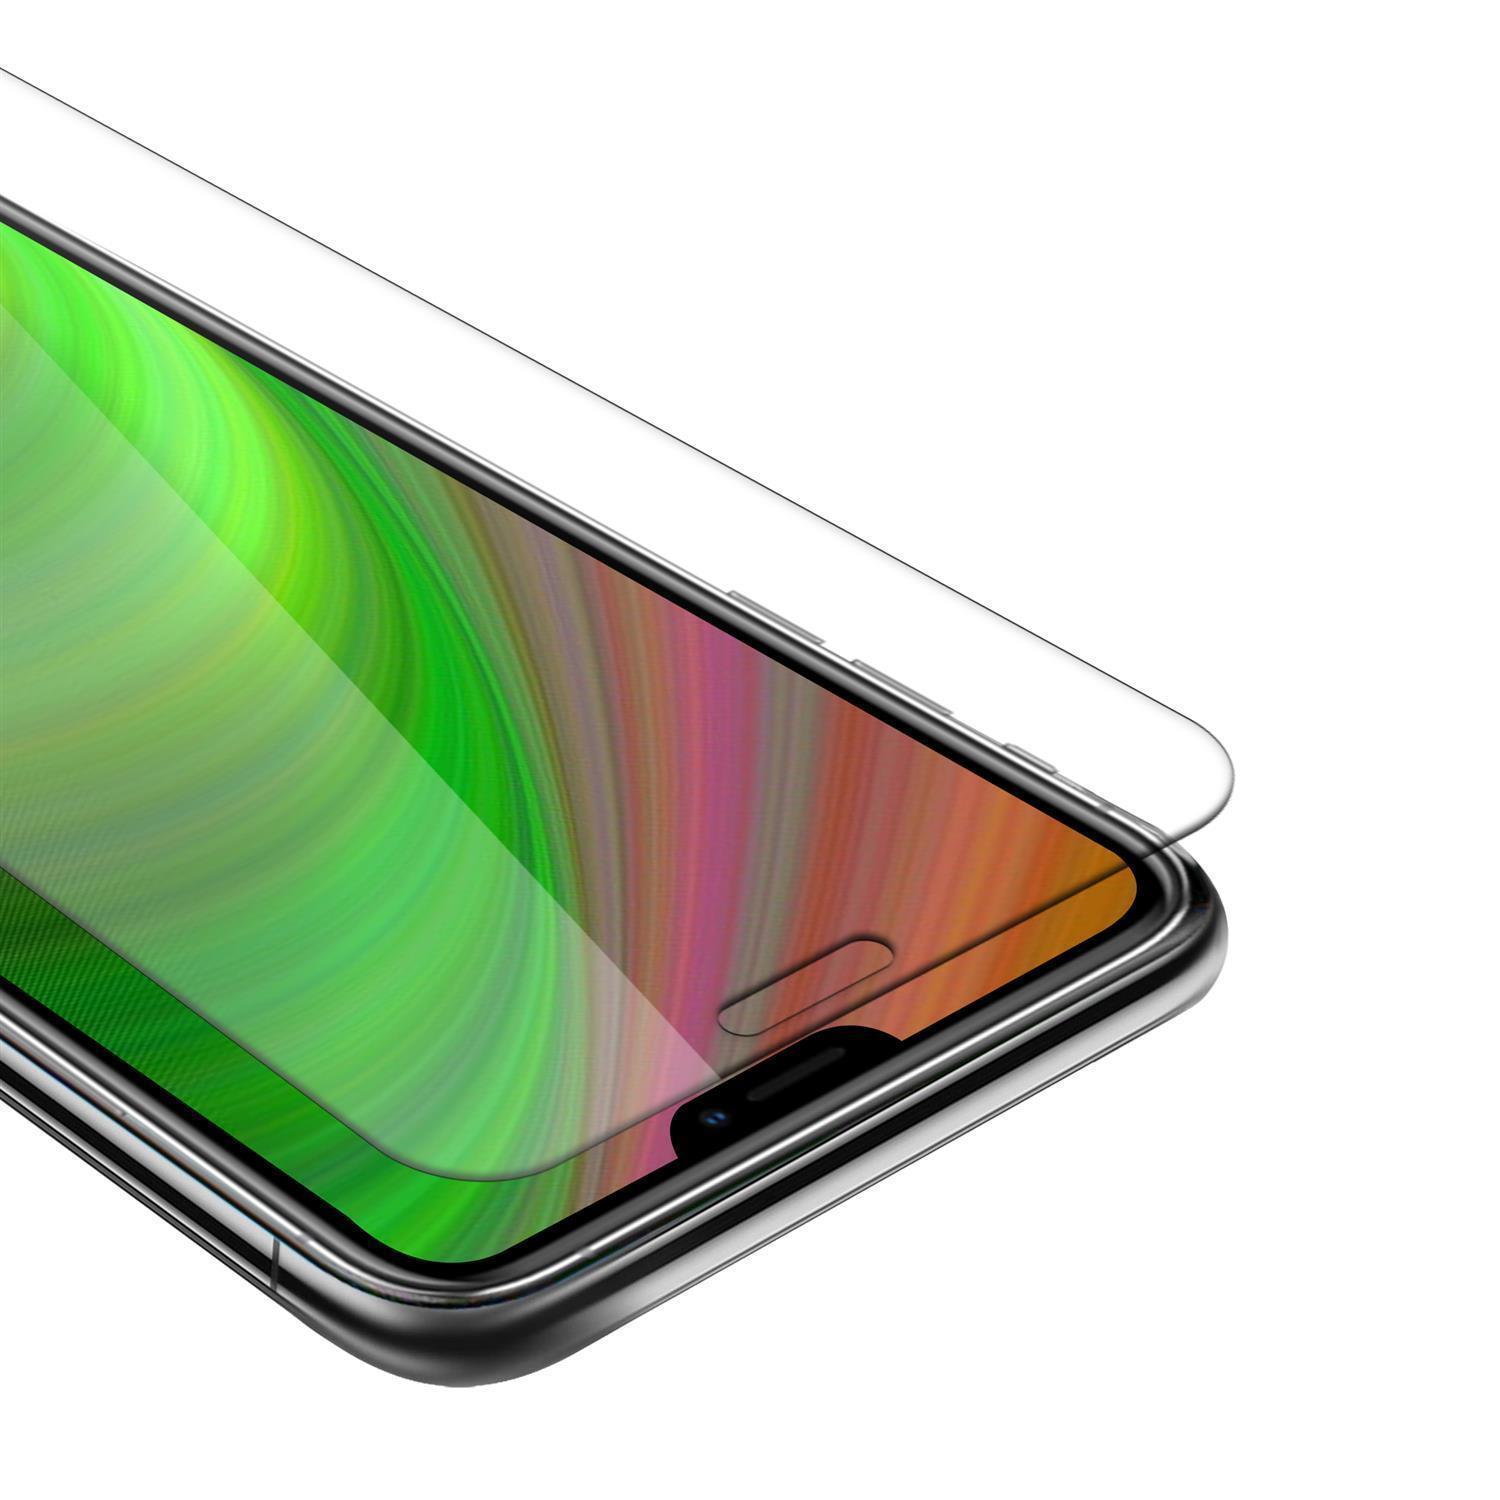 Verre de trempépour Apple iPhone 12 / iPhone 12 Pro (6,1'' Zoll) en HAUTE TRANSPARENT Film de protection d'écran durci tempered glass d'une dureté de 9H avec compatibilité 3D Touch